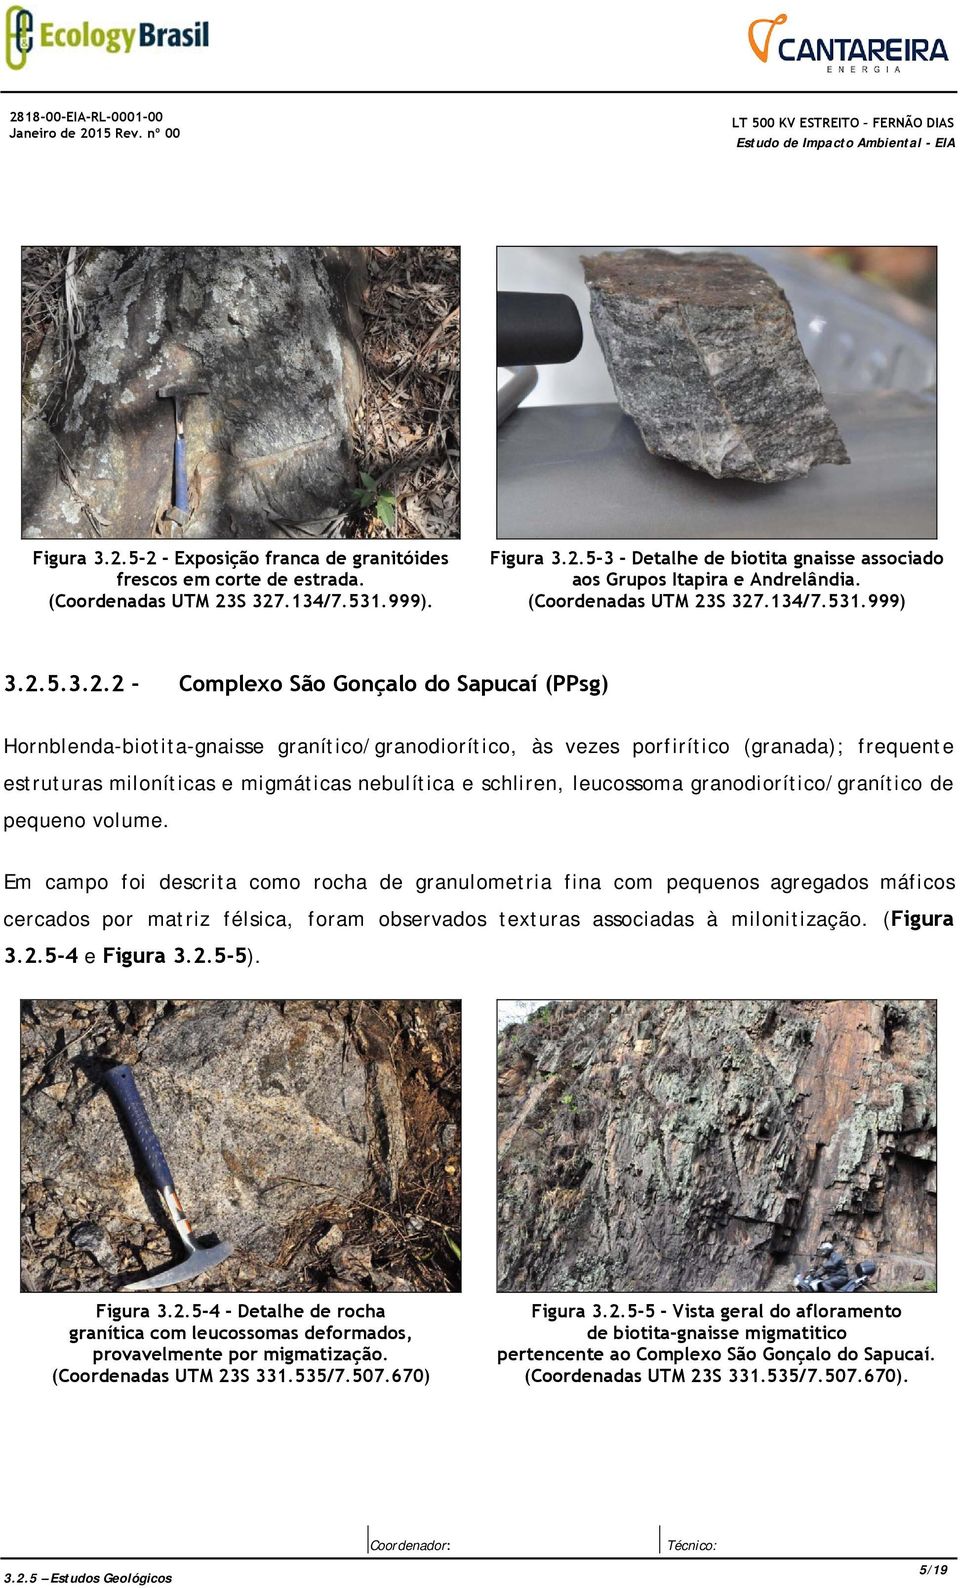 S 327.134/7.531.999) 3.2.5.3.2.2 - Complexo São Gonçalo do Sapucaí (PPsg) Hornblenda-biotita-gnaisse granítico/granodiorítico, às vezes porfirítico (granada); frequente estruturas miloníticas e